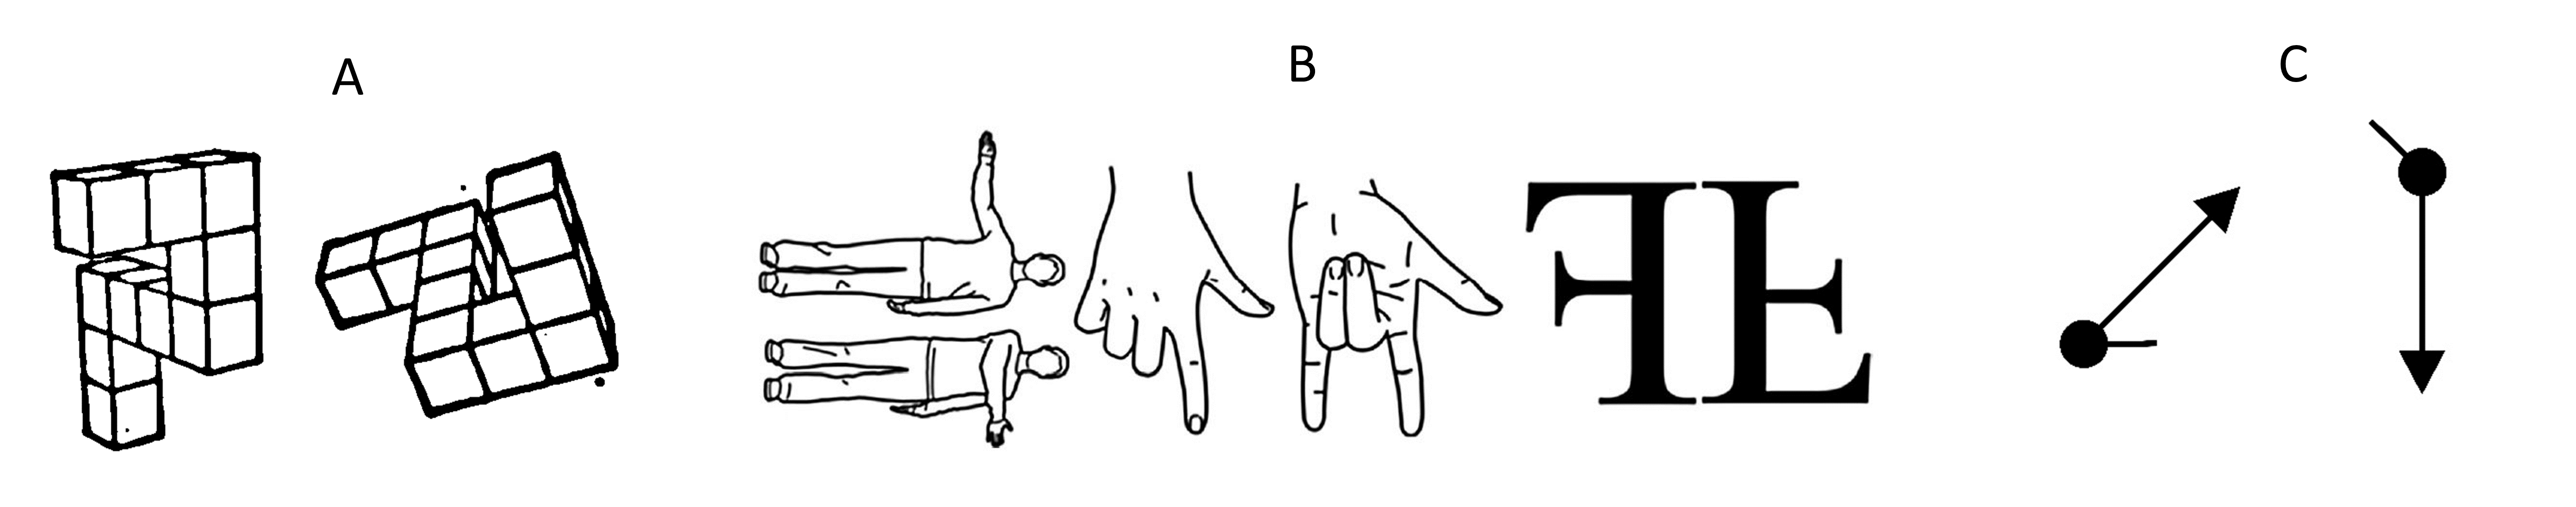 Experimentalparadigmen zum Untersuchen von Mentaler Rotation. (A) Shepard-Metzler Figuren (Shepard & Metzler, 1971) (B) Koerper-, Hand- oder Buchstabenstimuli (Falconer & Mast, 2012) (C) Path Rotation Stimuli aus dem Online Experiment.